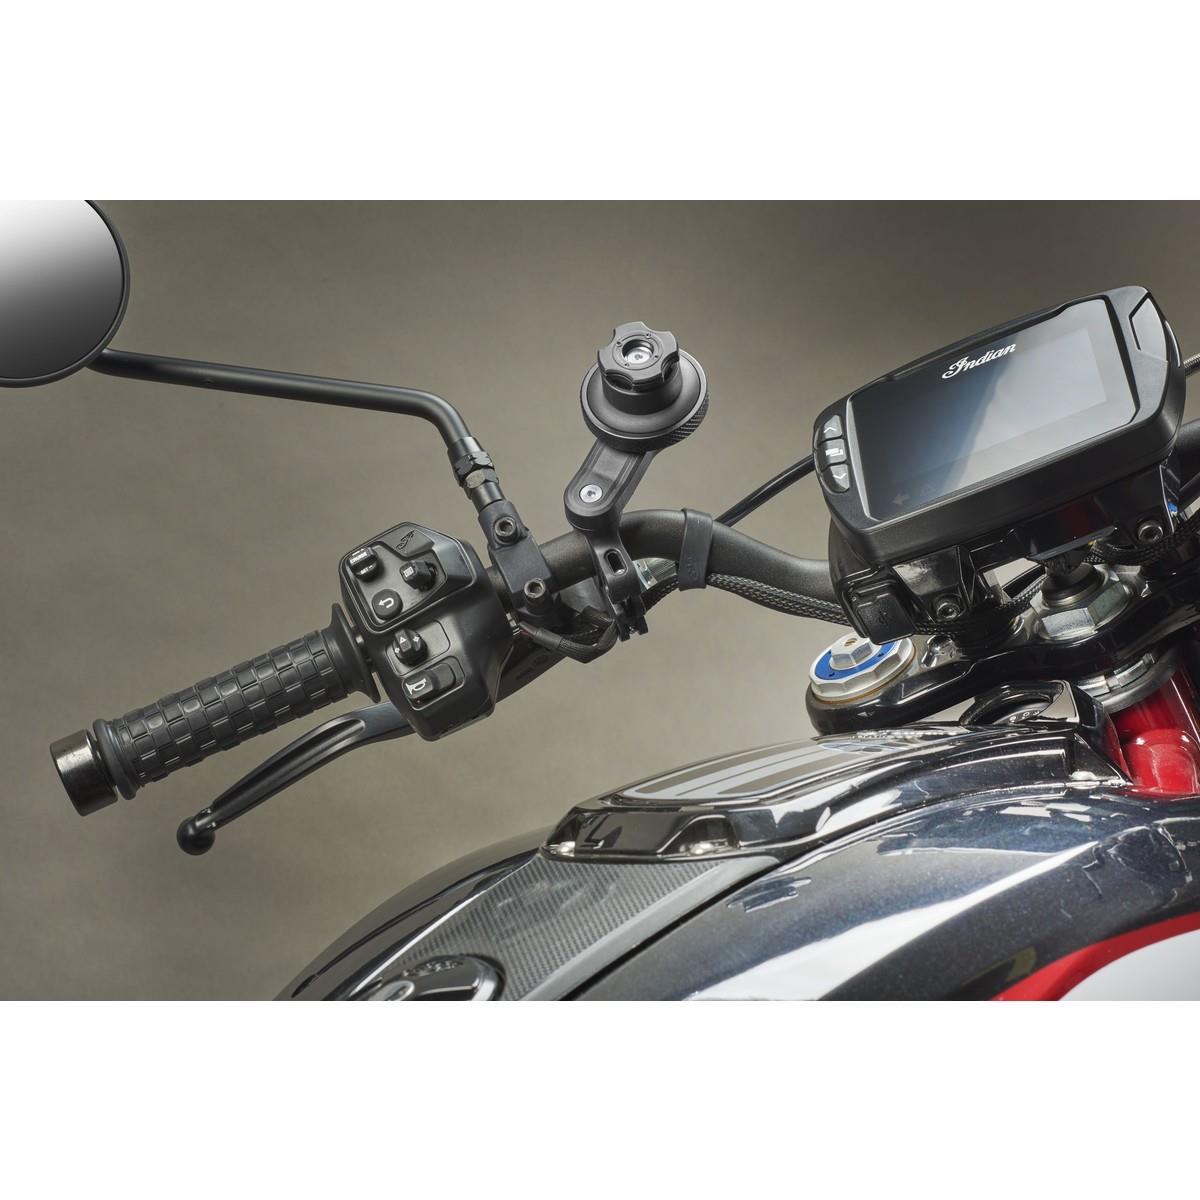 Quiklox Anti-Vibrationsmodul für Motorradhalterung Smartphone